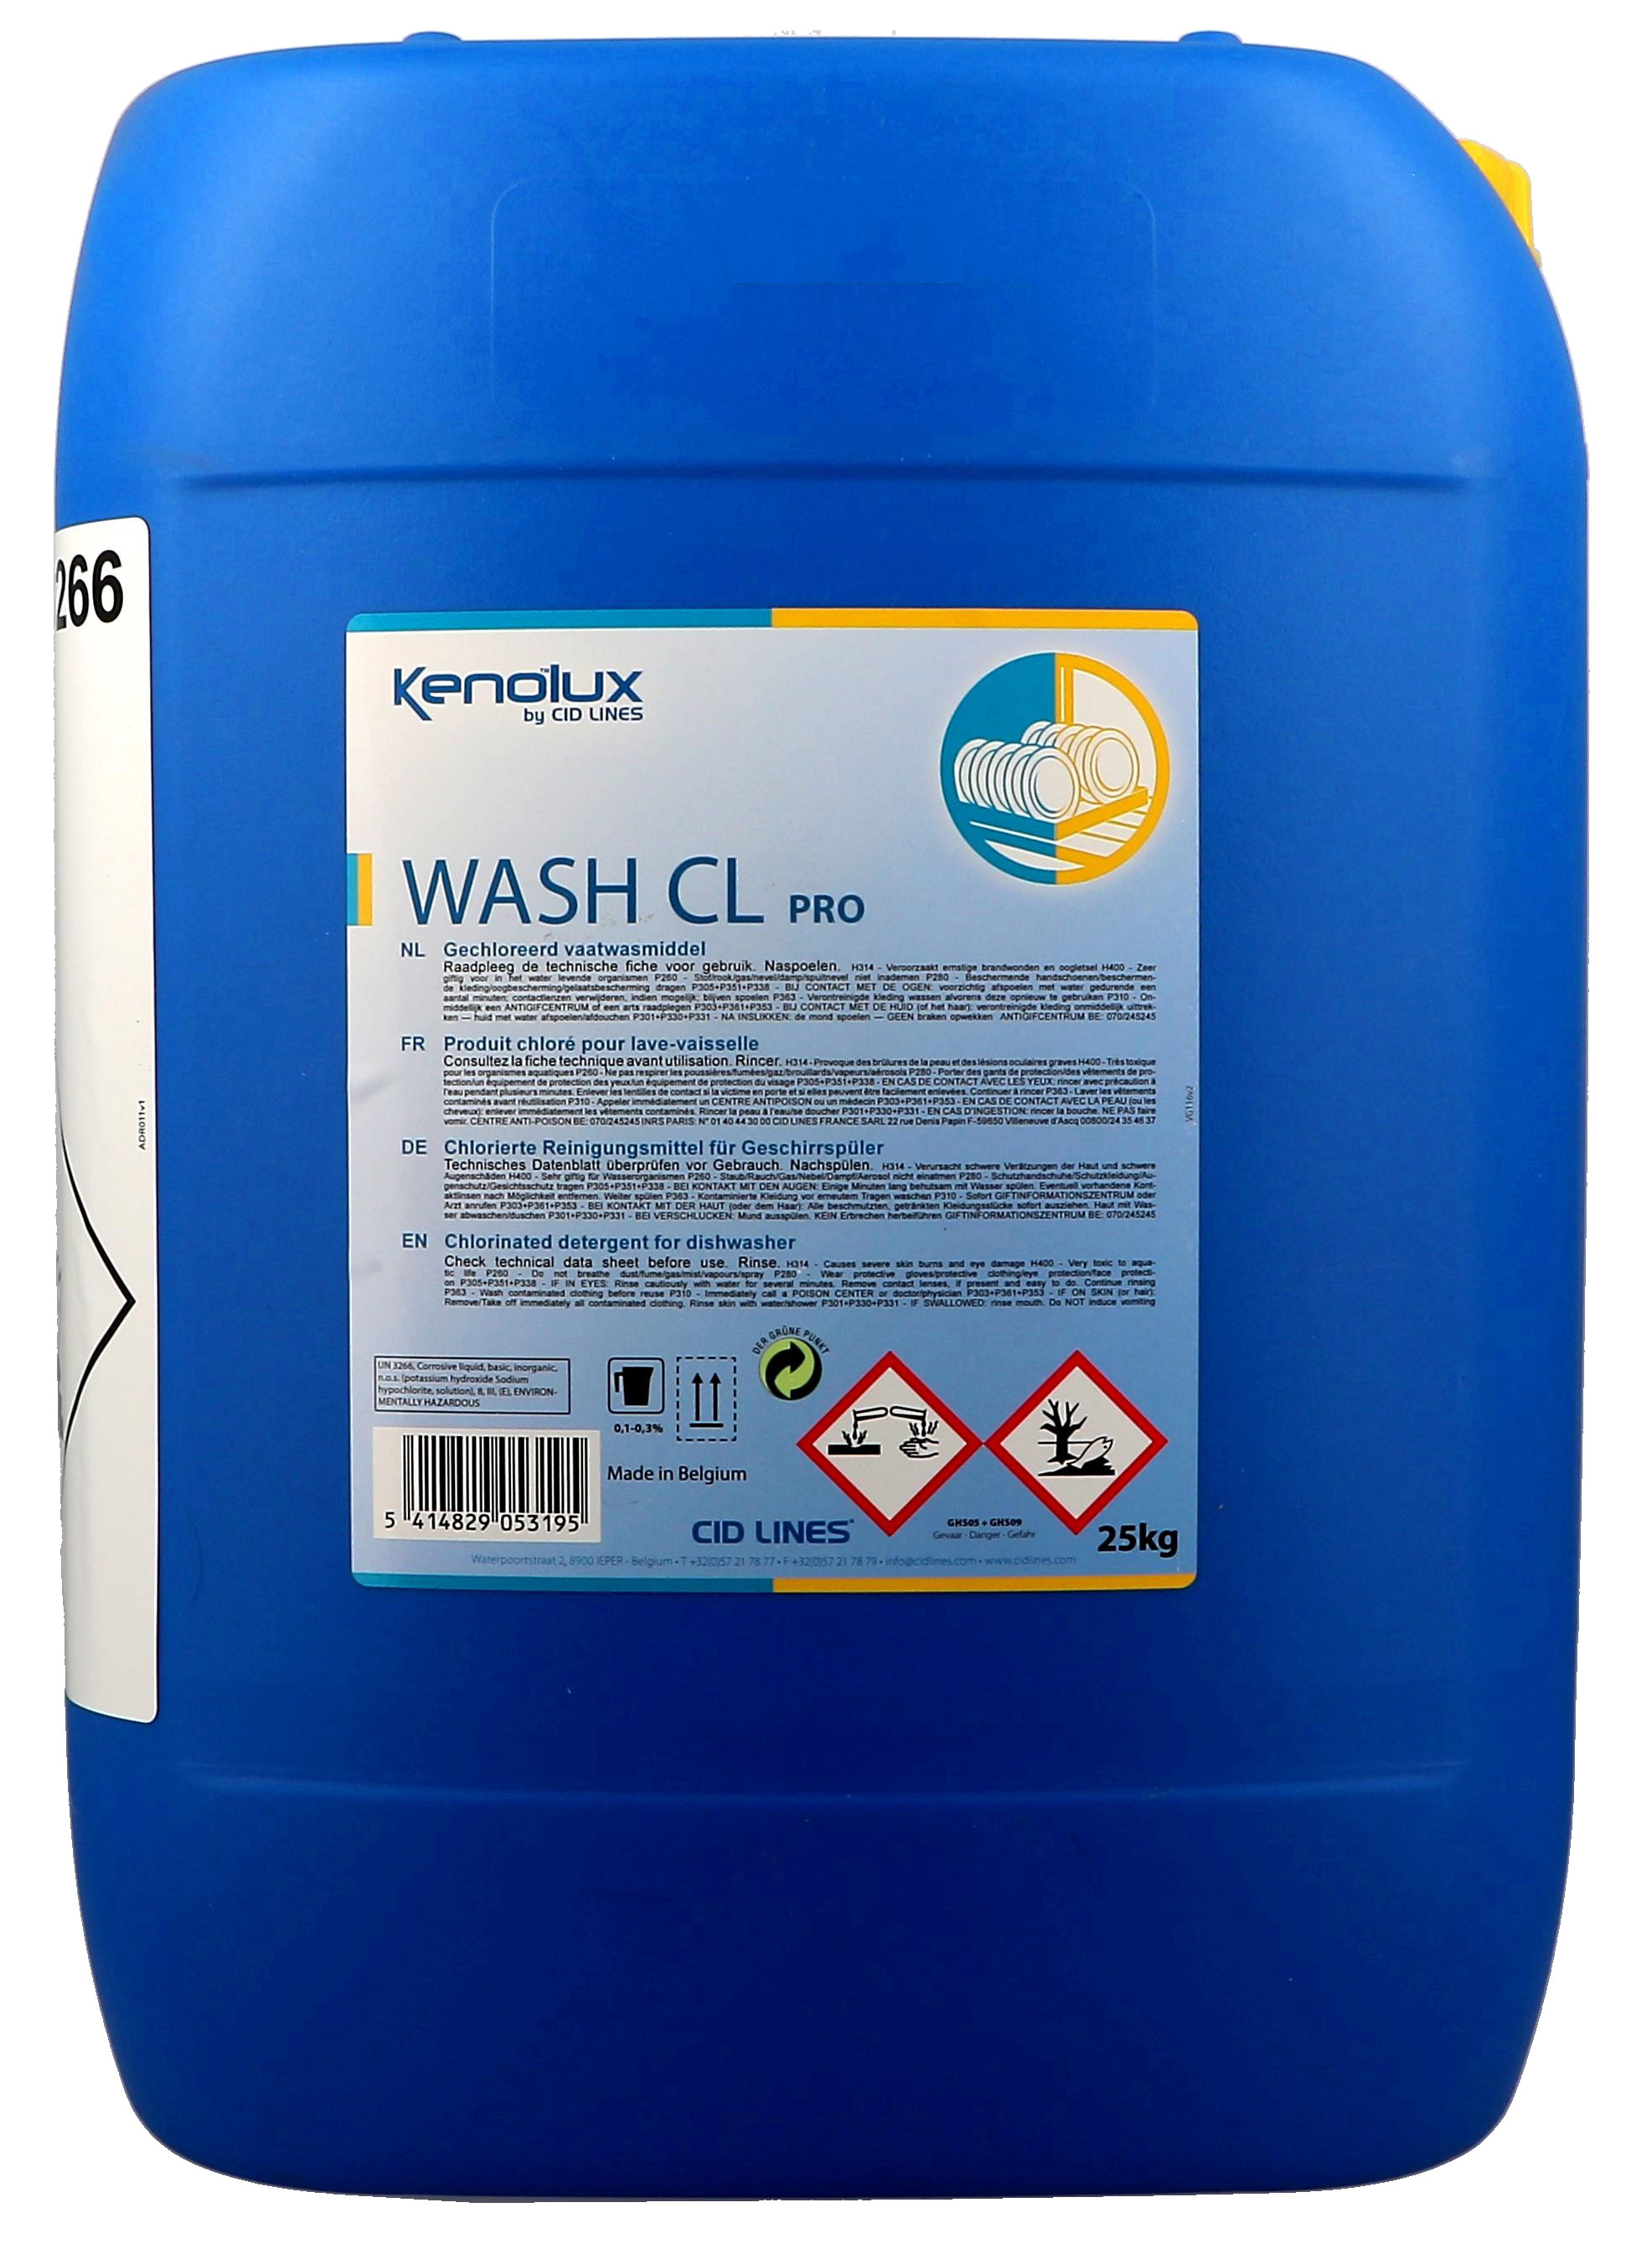 Kenolux Wash CL 25kg vloeibaar vaatwasmiddel met chloor Cid Lines